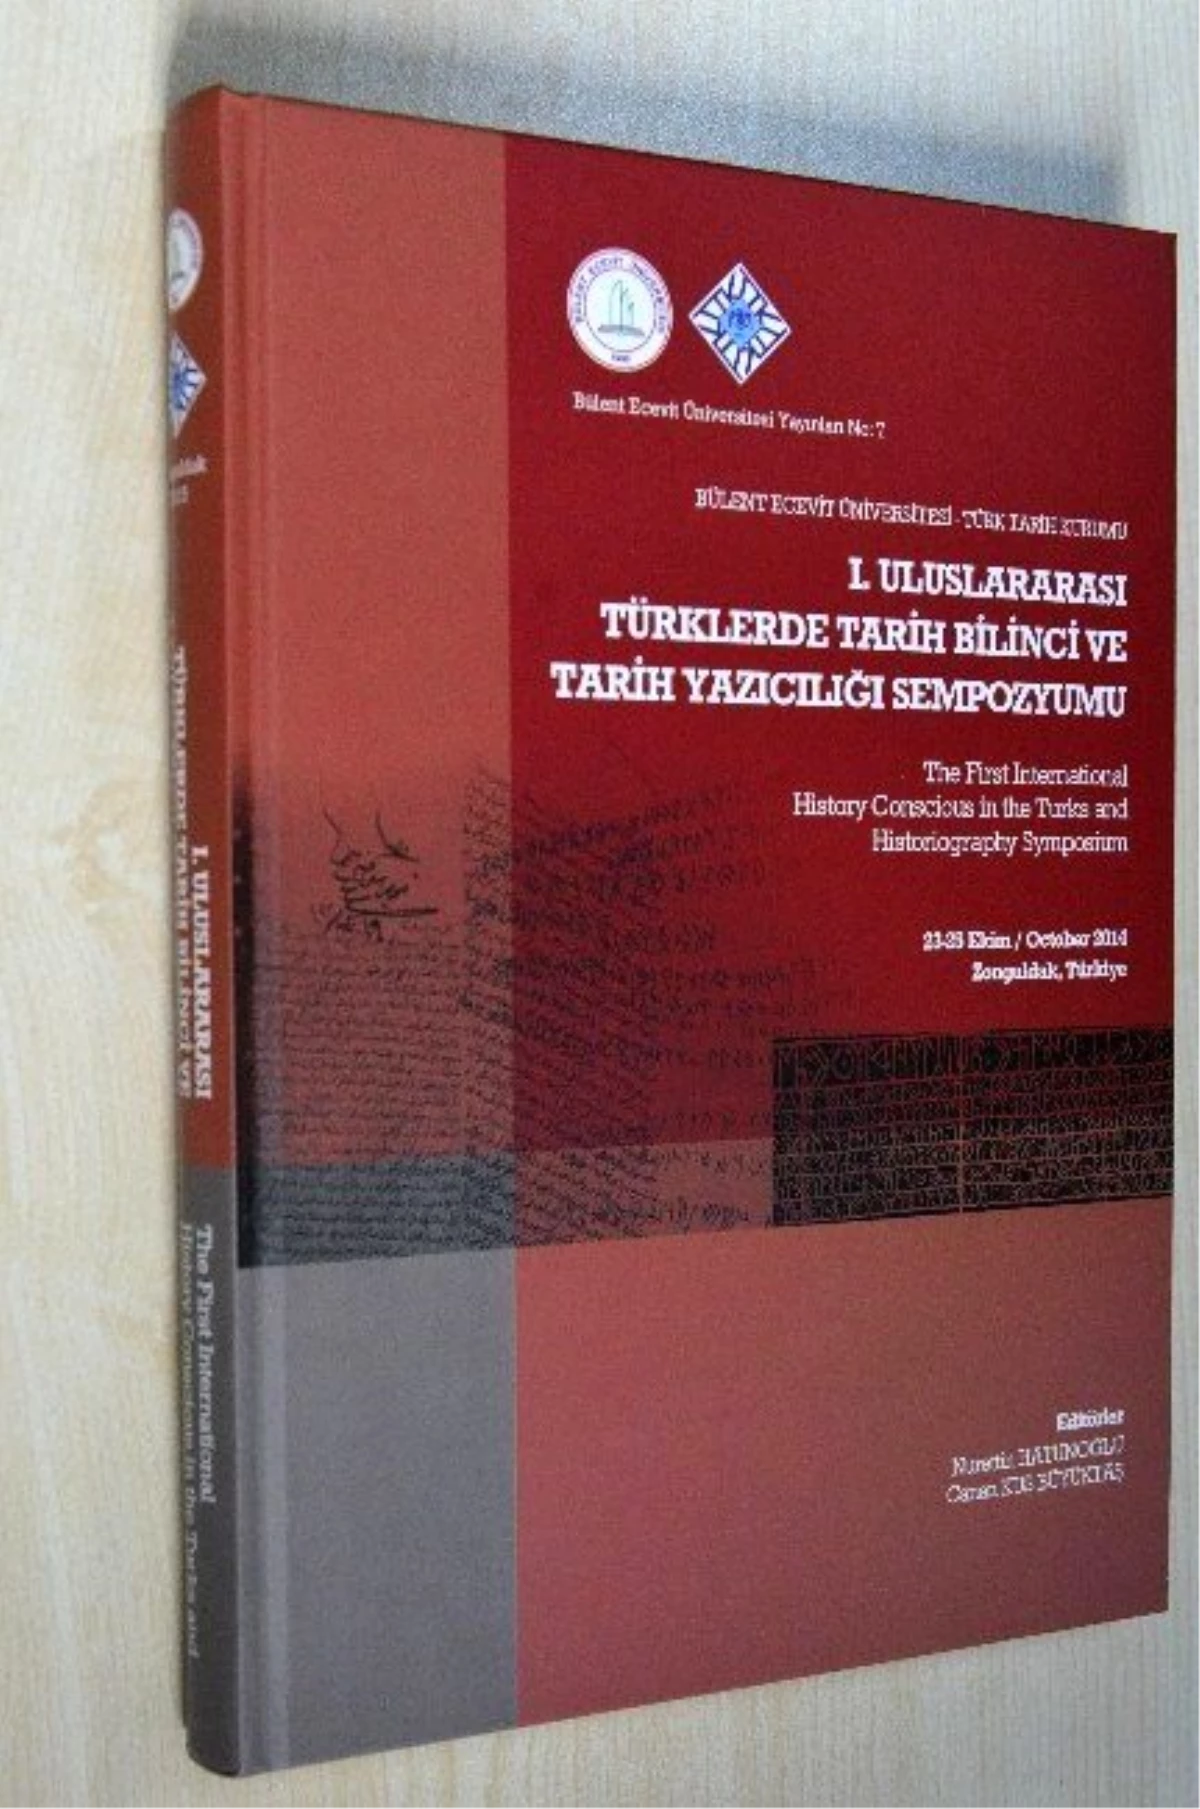 Beü Yayınevi 1. Uluslararası Türklerde Tarih Bilinci ve Tarih Yazıcılığı Sempozyumu Kitabını...